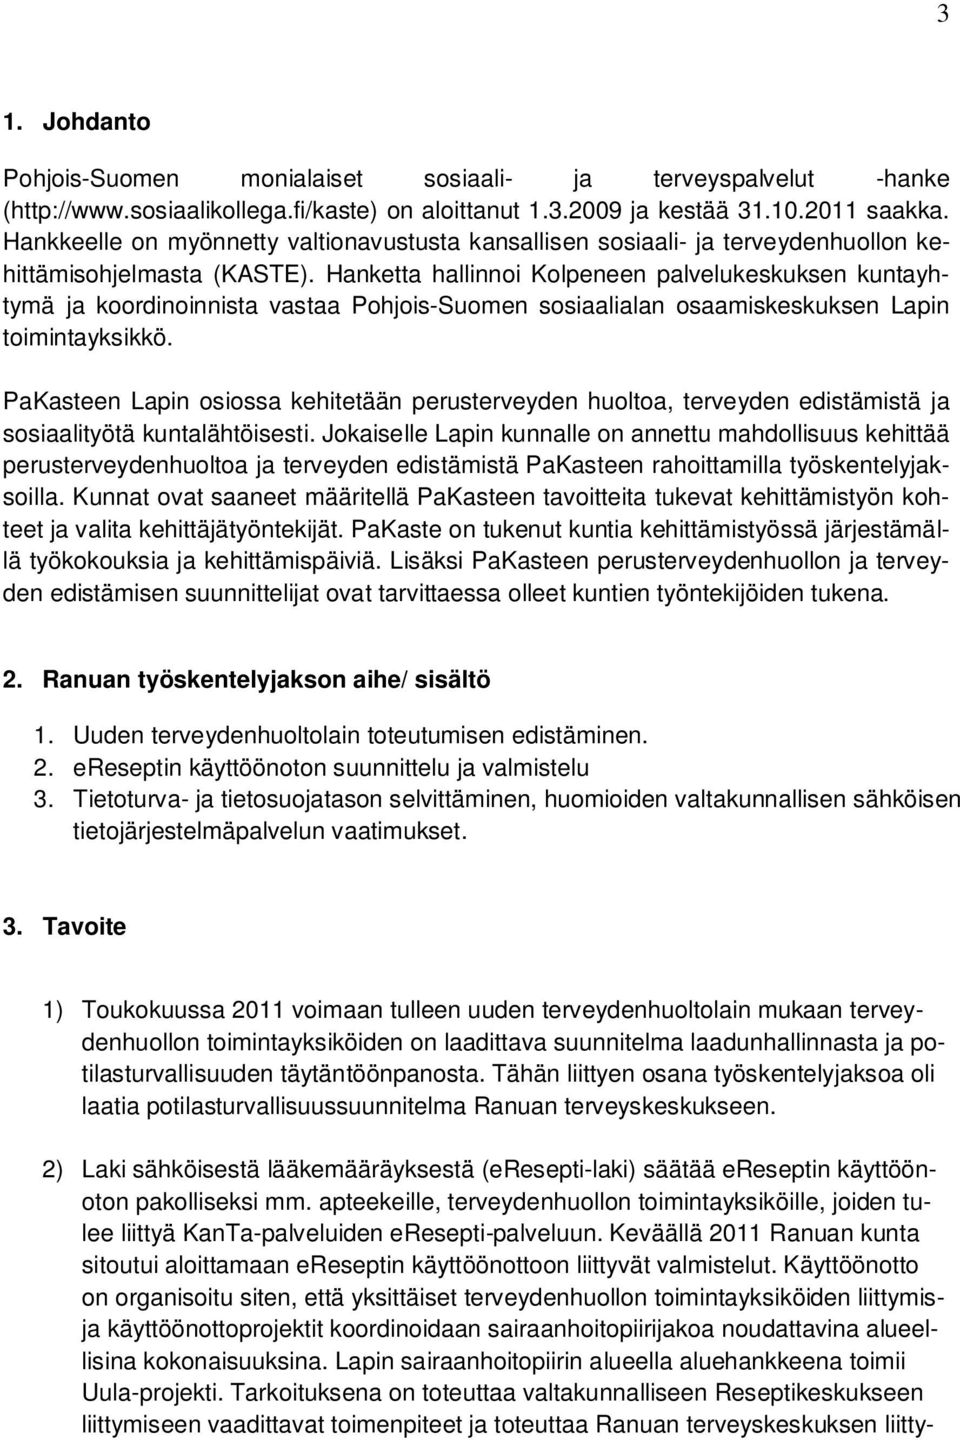 Hanketta hallinnoi Kolpeneen palvelukeskuksen kuntayhtymä ja koordinoinnista vastaa Pohjois-Suomen sosiaalialan osaamiskeskuksen Lapin toimintayksikkö.